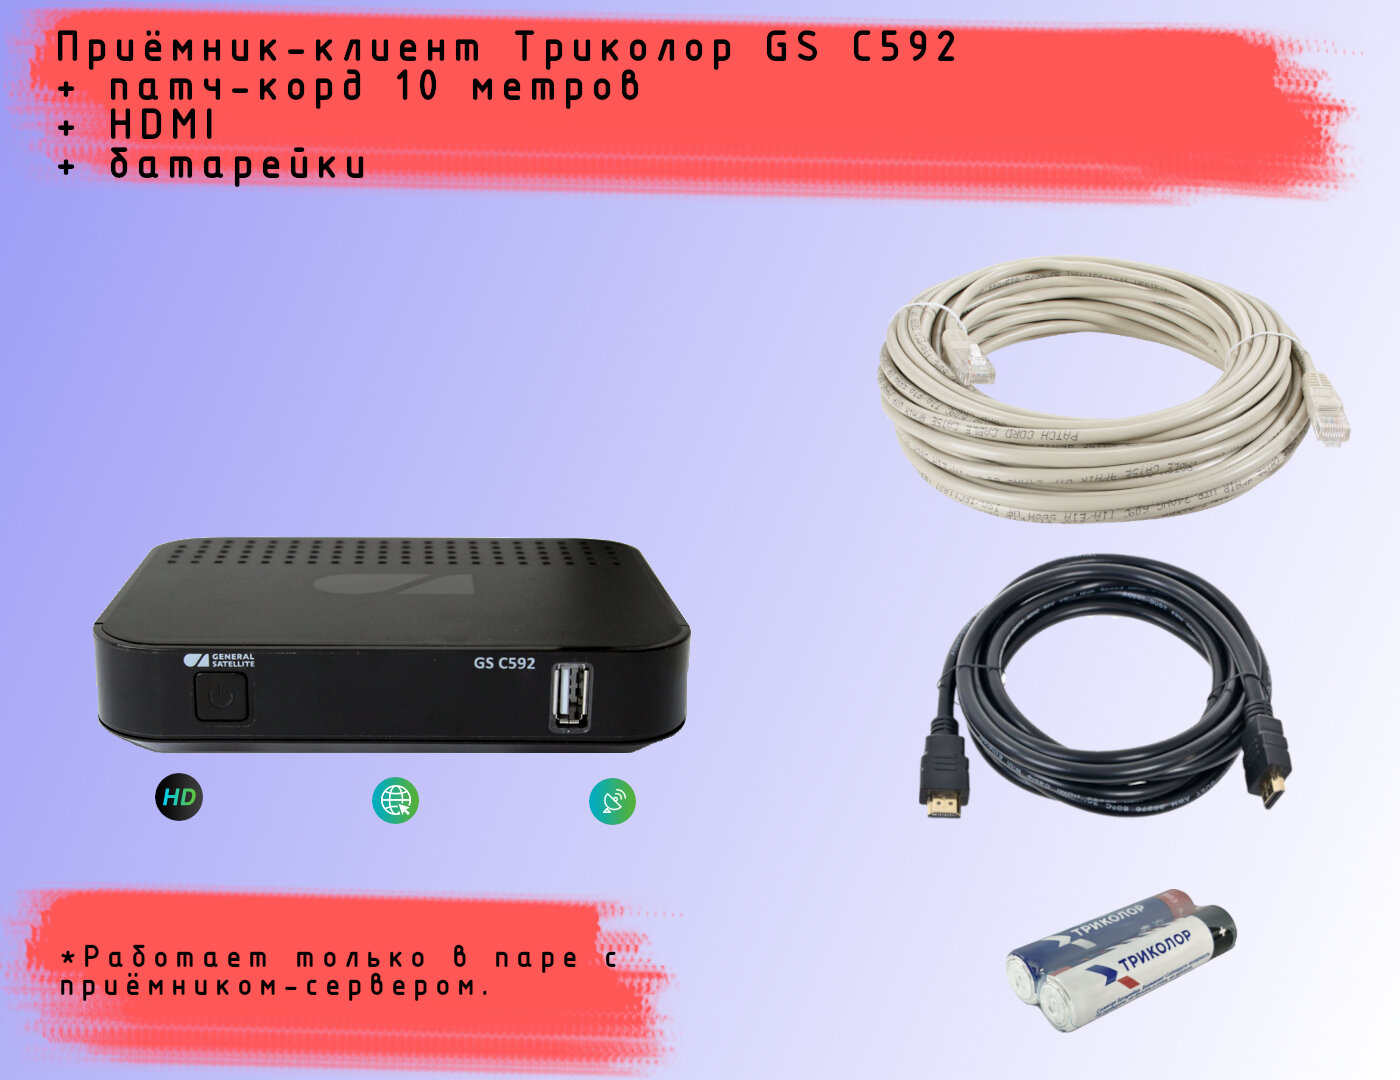 Спутниковая HD приставка-клиент Триколор GS C592 со встроенным Wi-Fi+HDMI 1,5м+батарейки+патч-корд (10 метров)